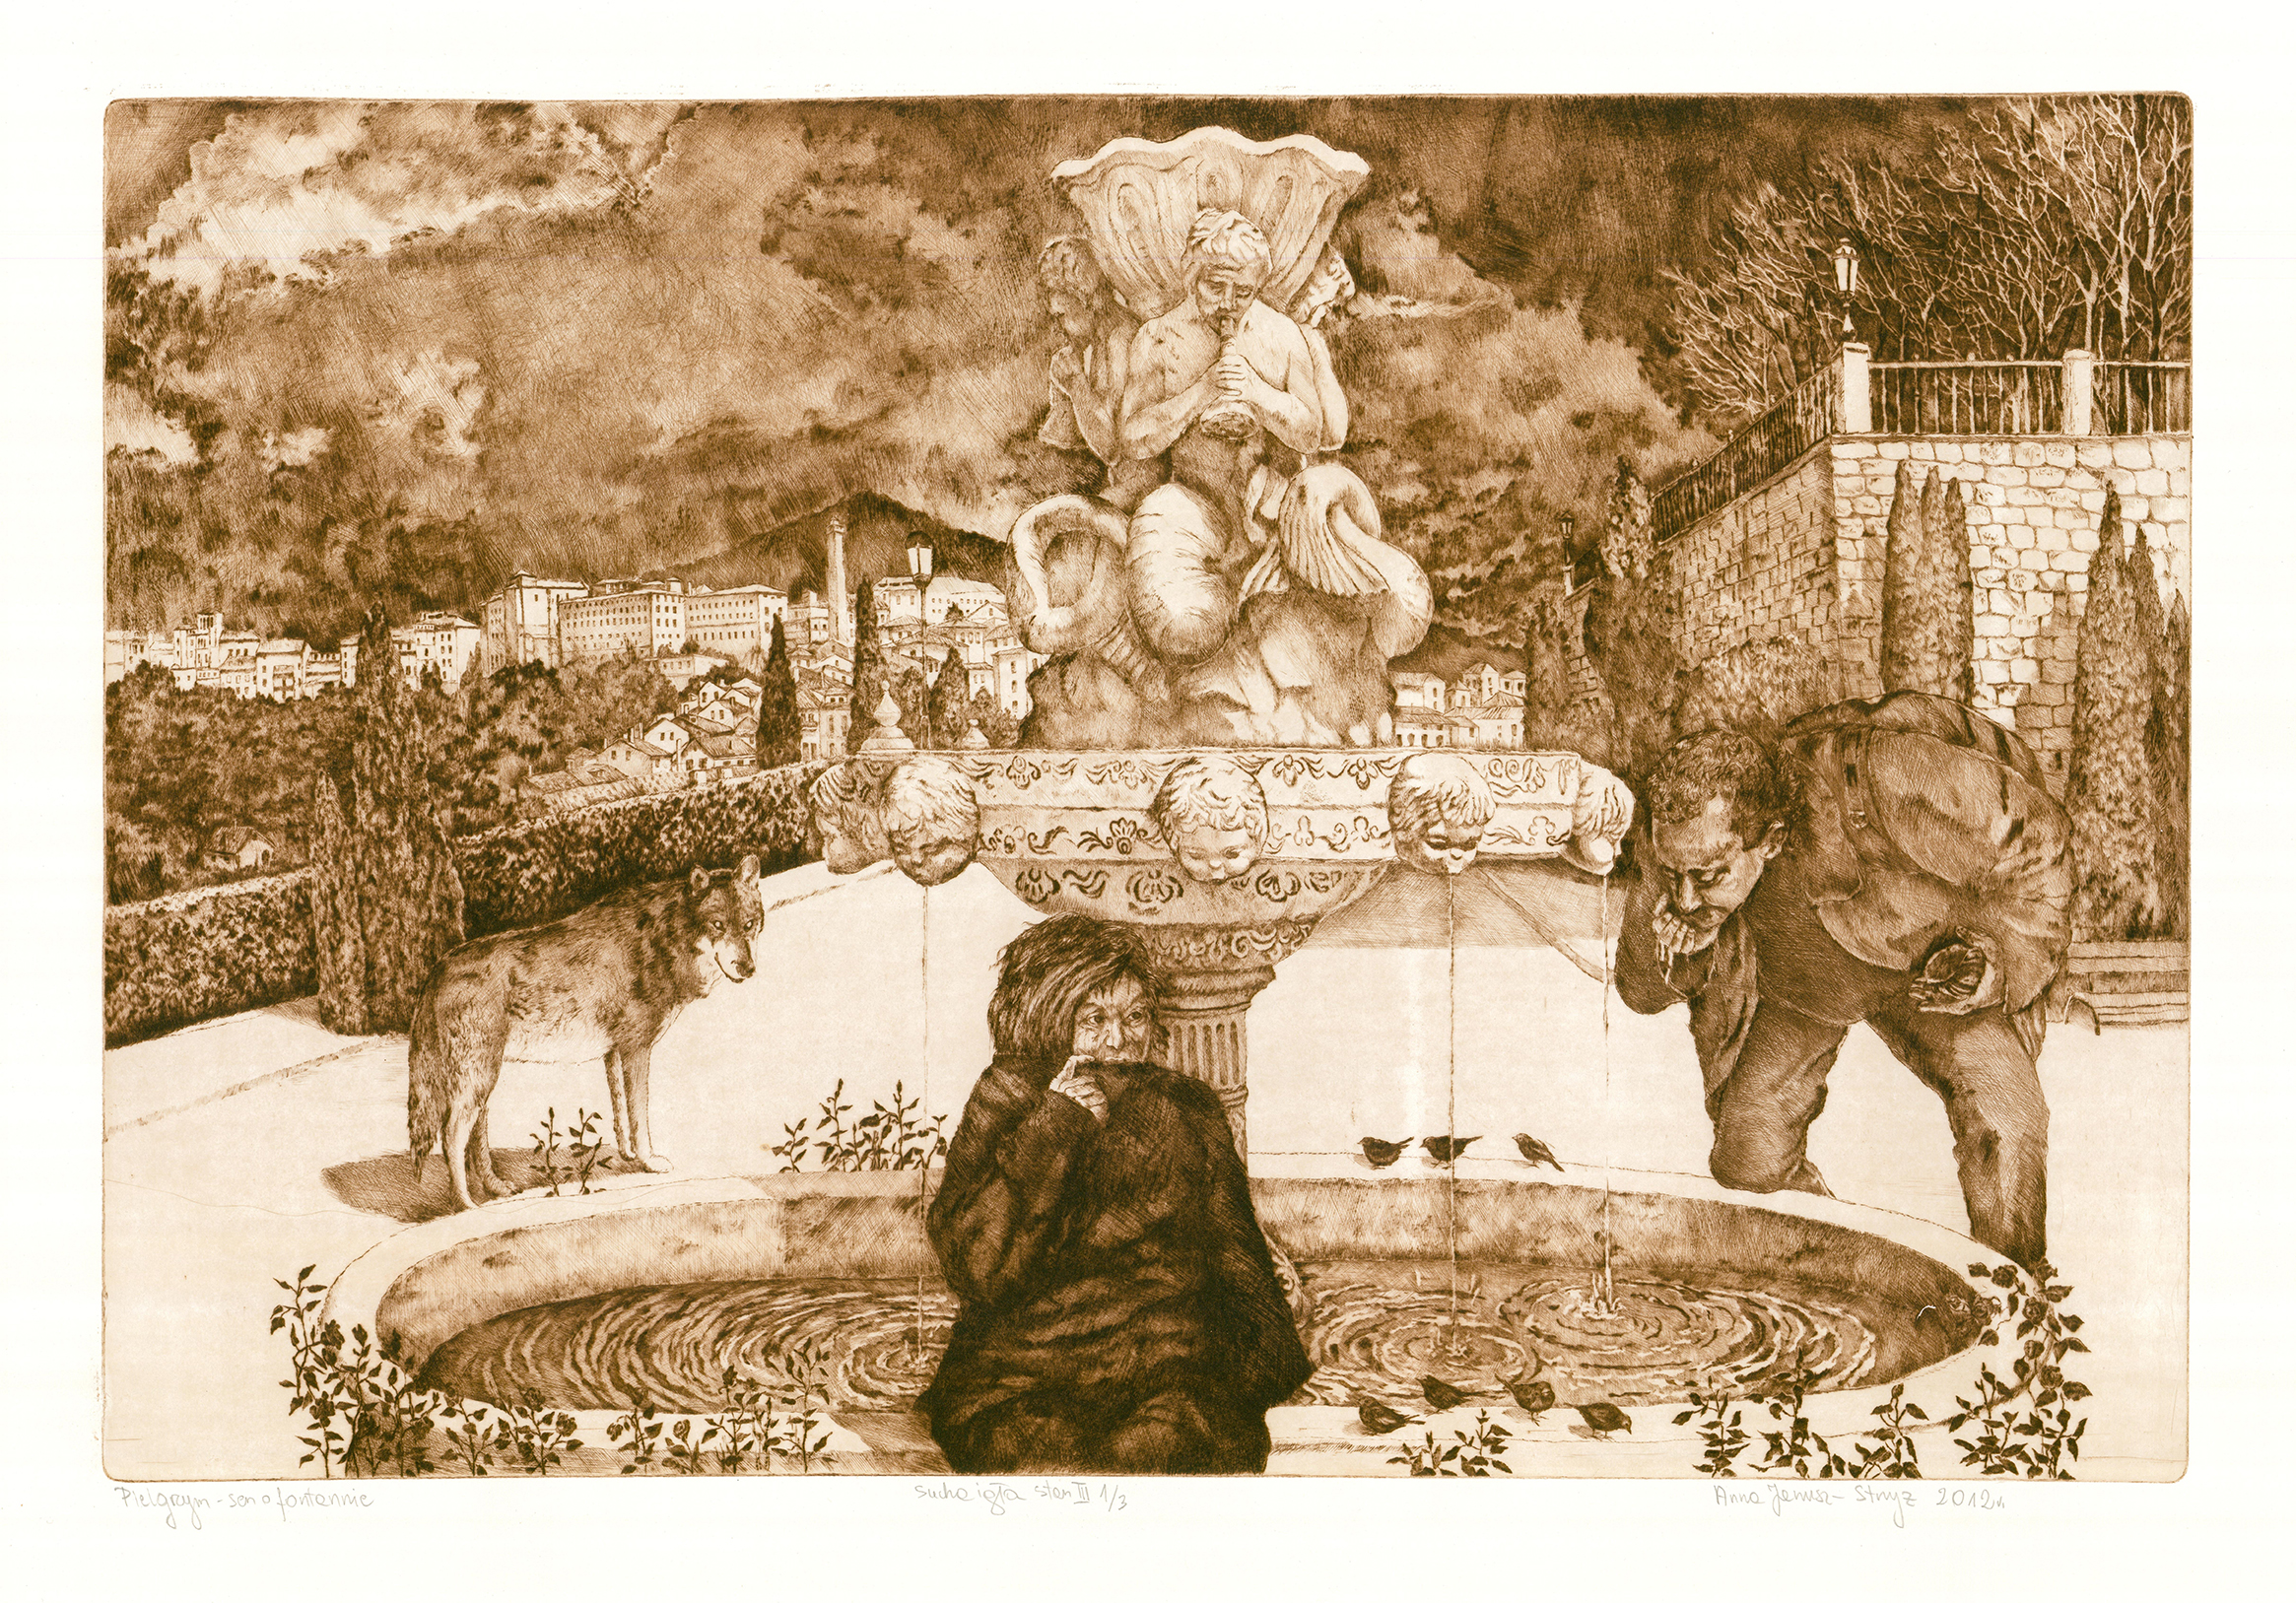 Pielgrzym-sen o fontannie, sucha igła, 50 x 70 cm. 2012